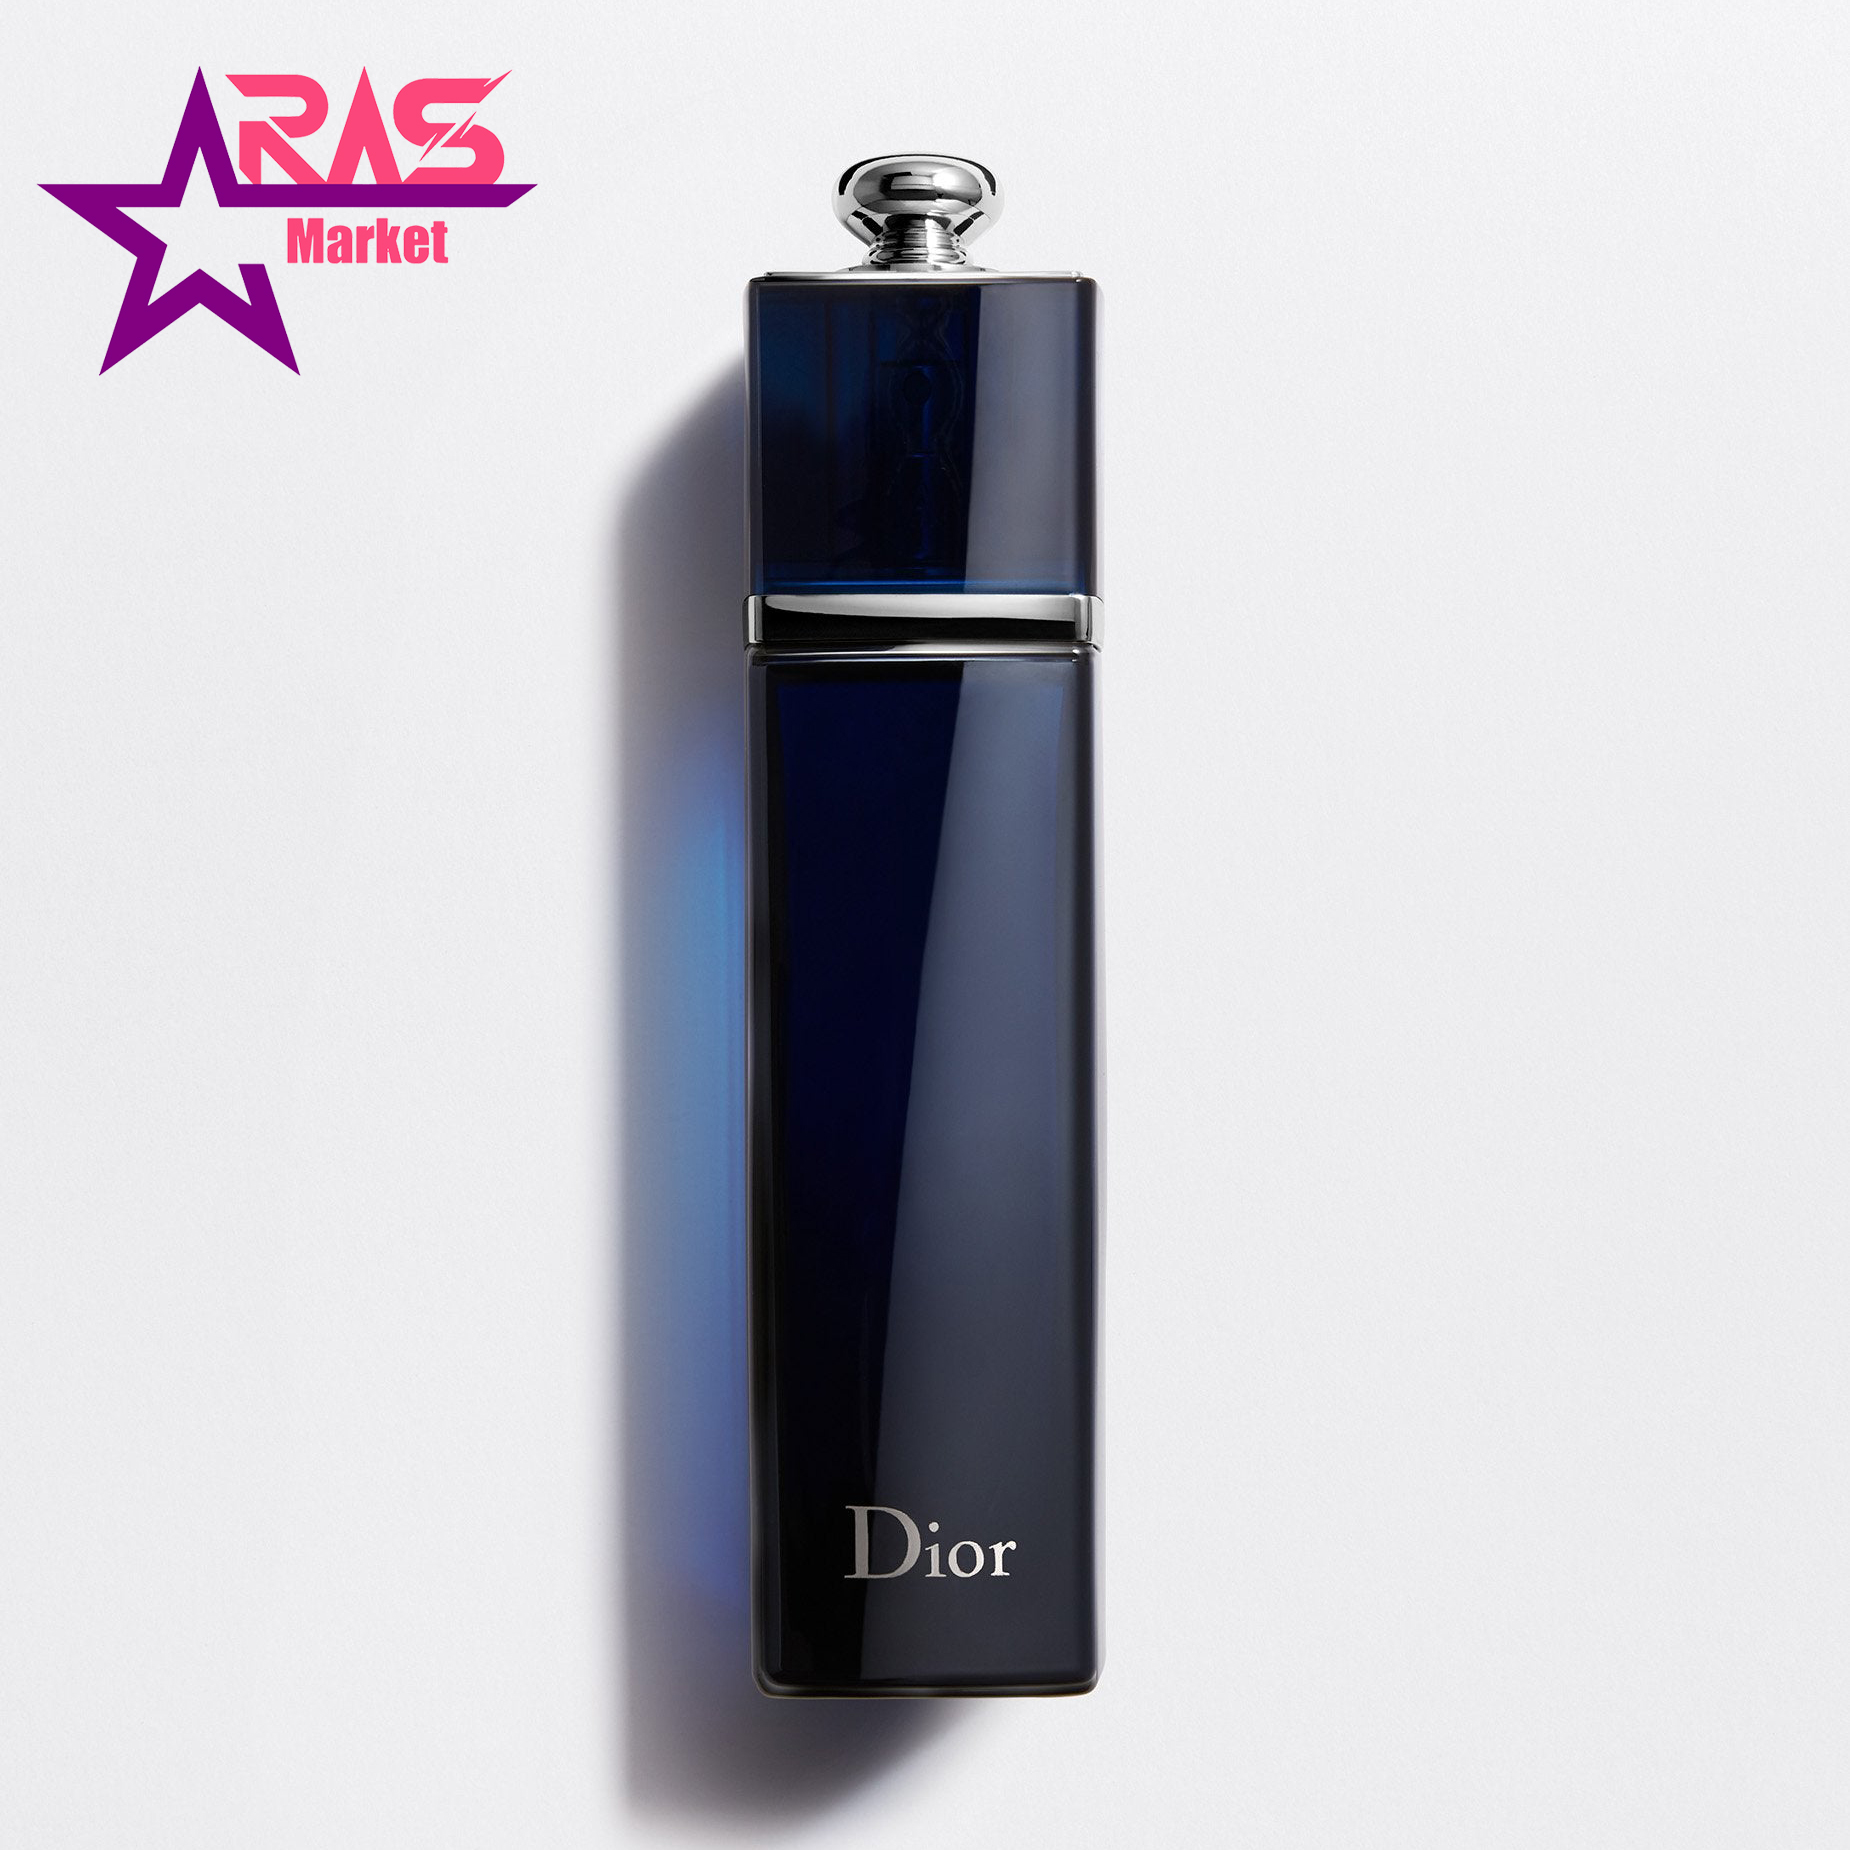 عطر دیور Dior Addict Eau de Parfum زنانه رنگ سرمه ای 100 میلی لیتر ، فروشگاه اینترنتی ارس مارکت